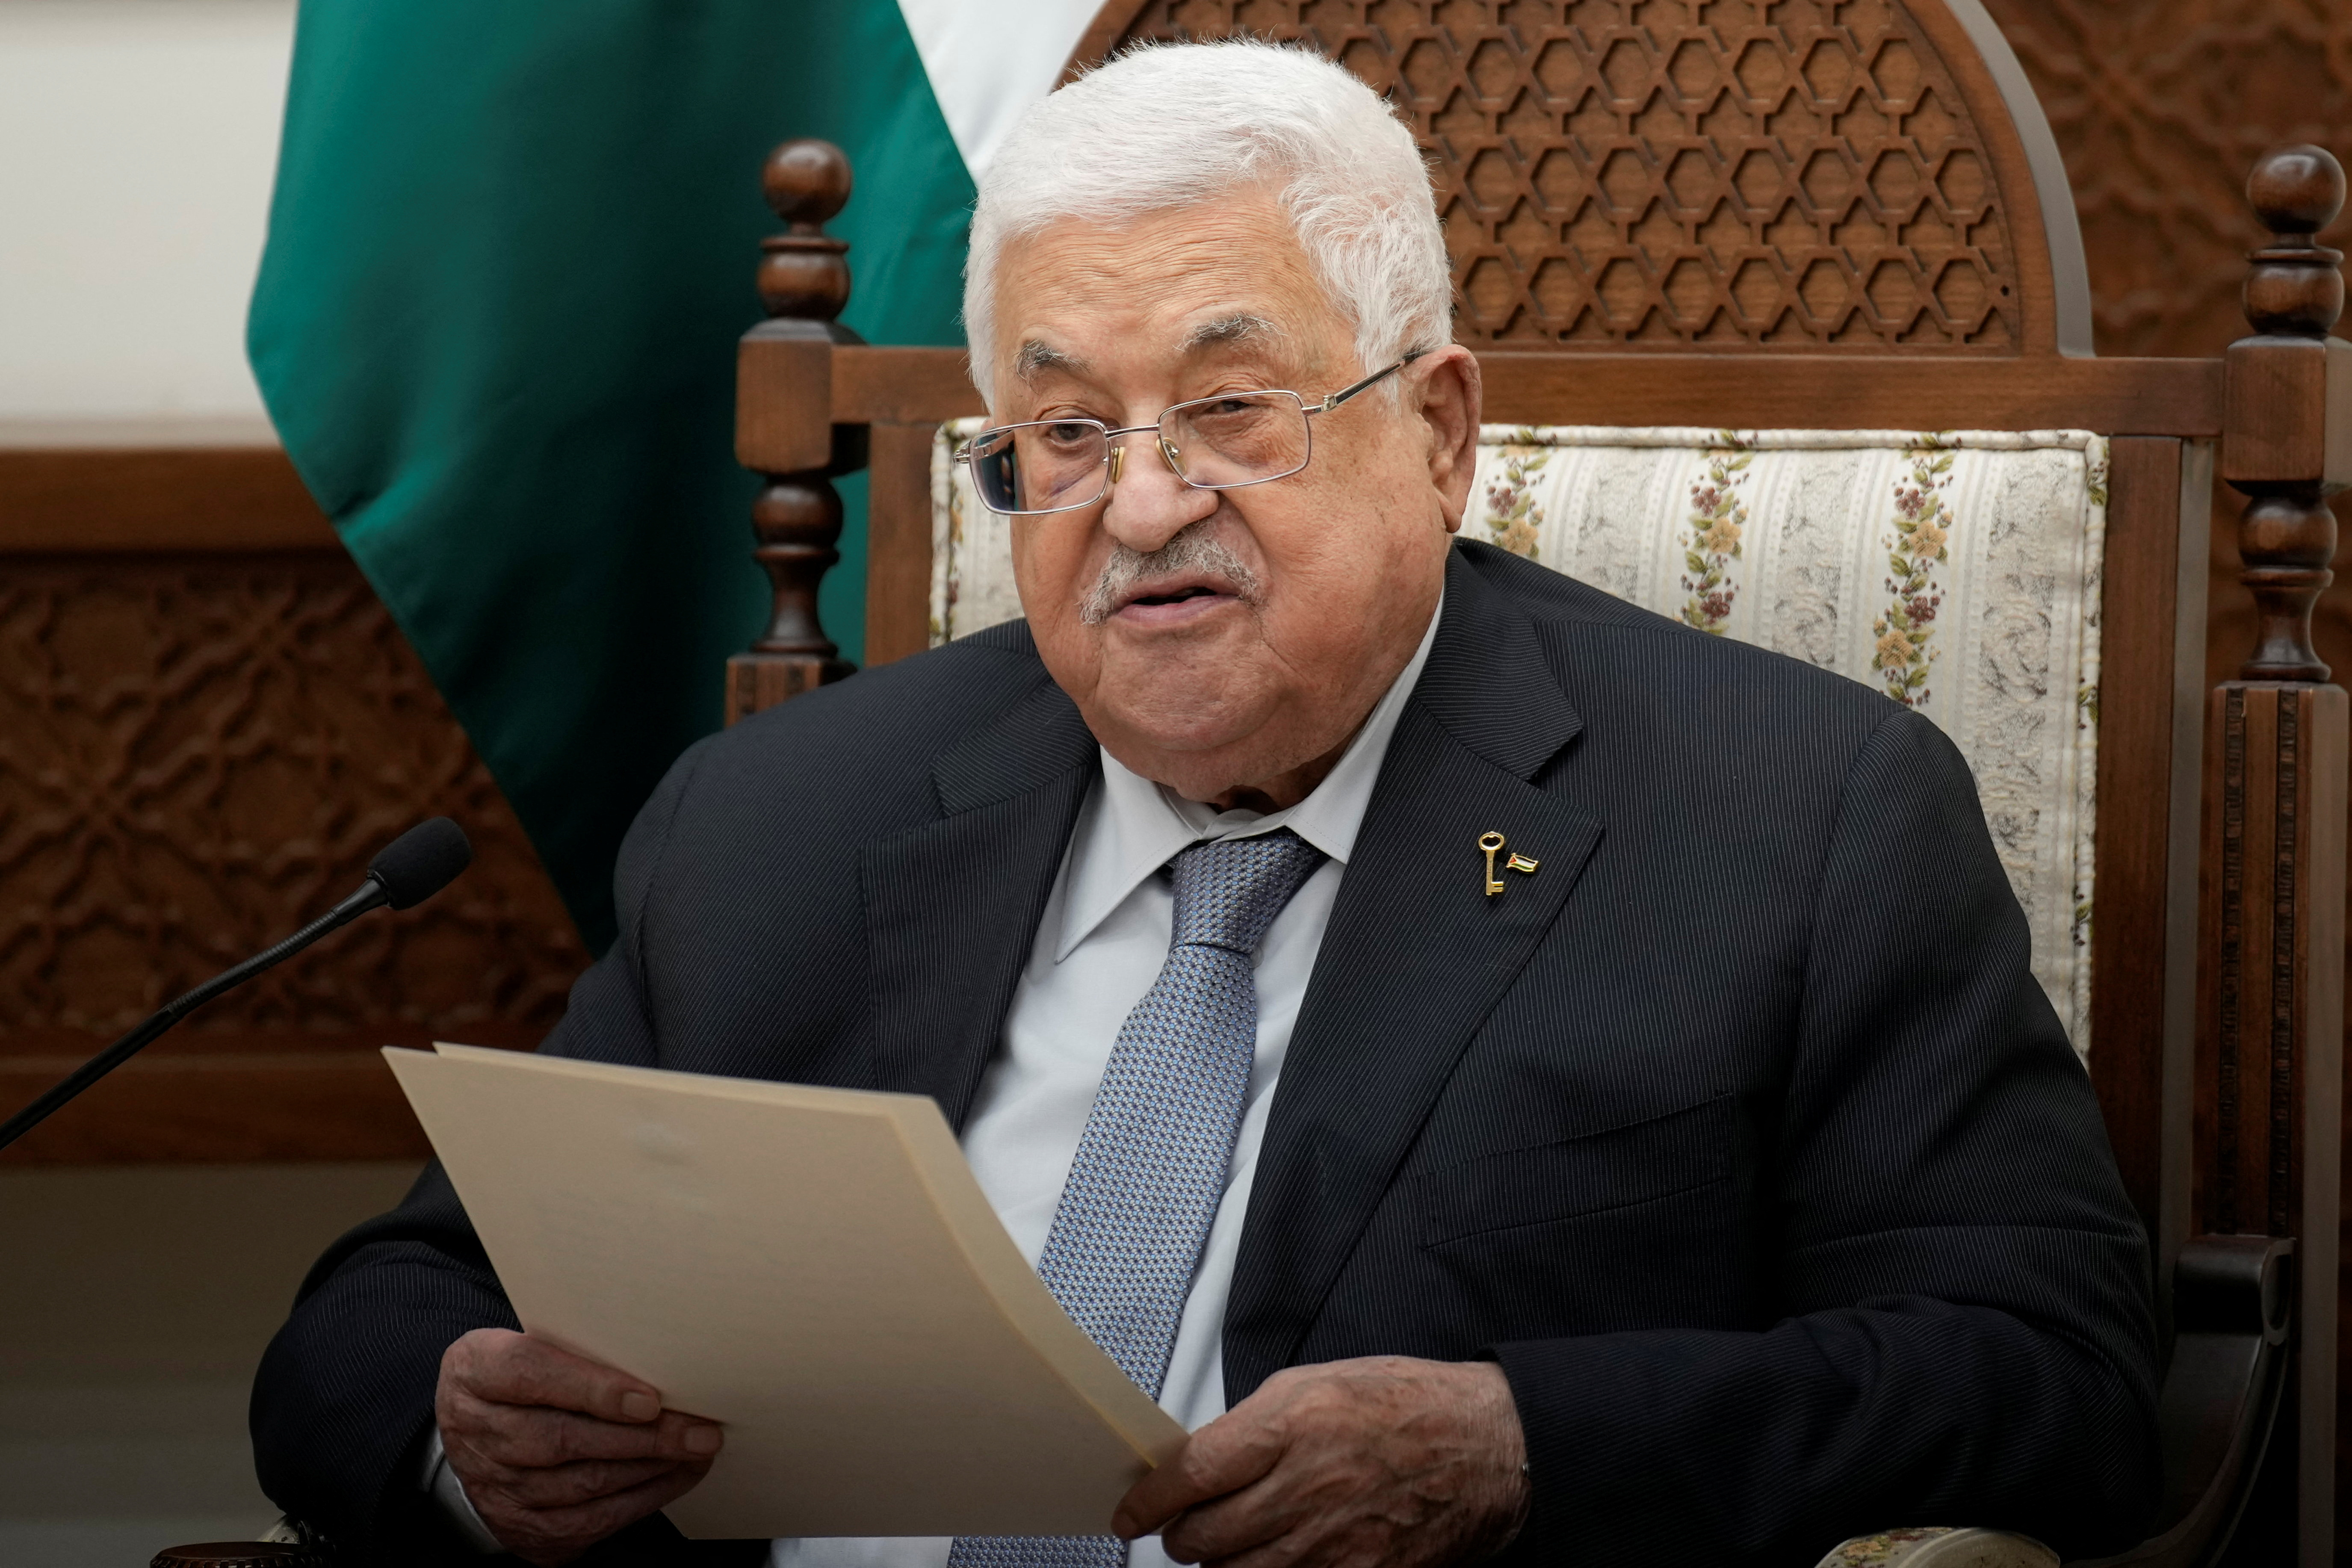 パレスチナ自治政府のアッバス議長、アラブ諸国に支援訴え